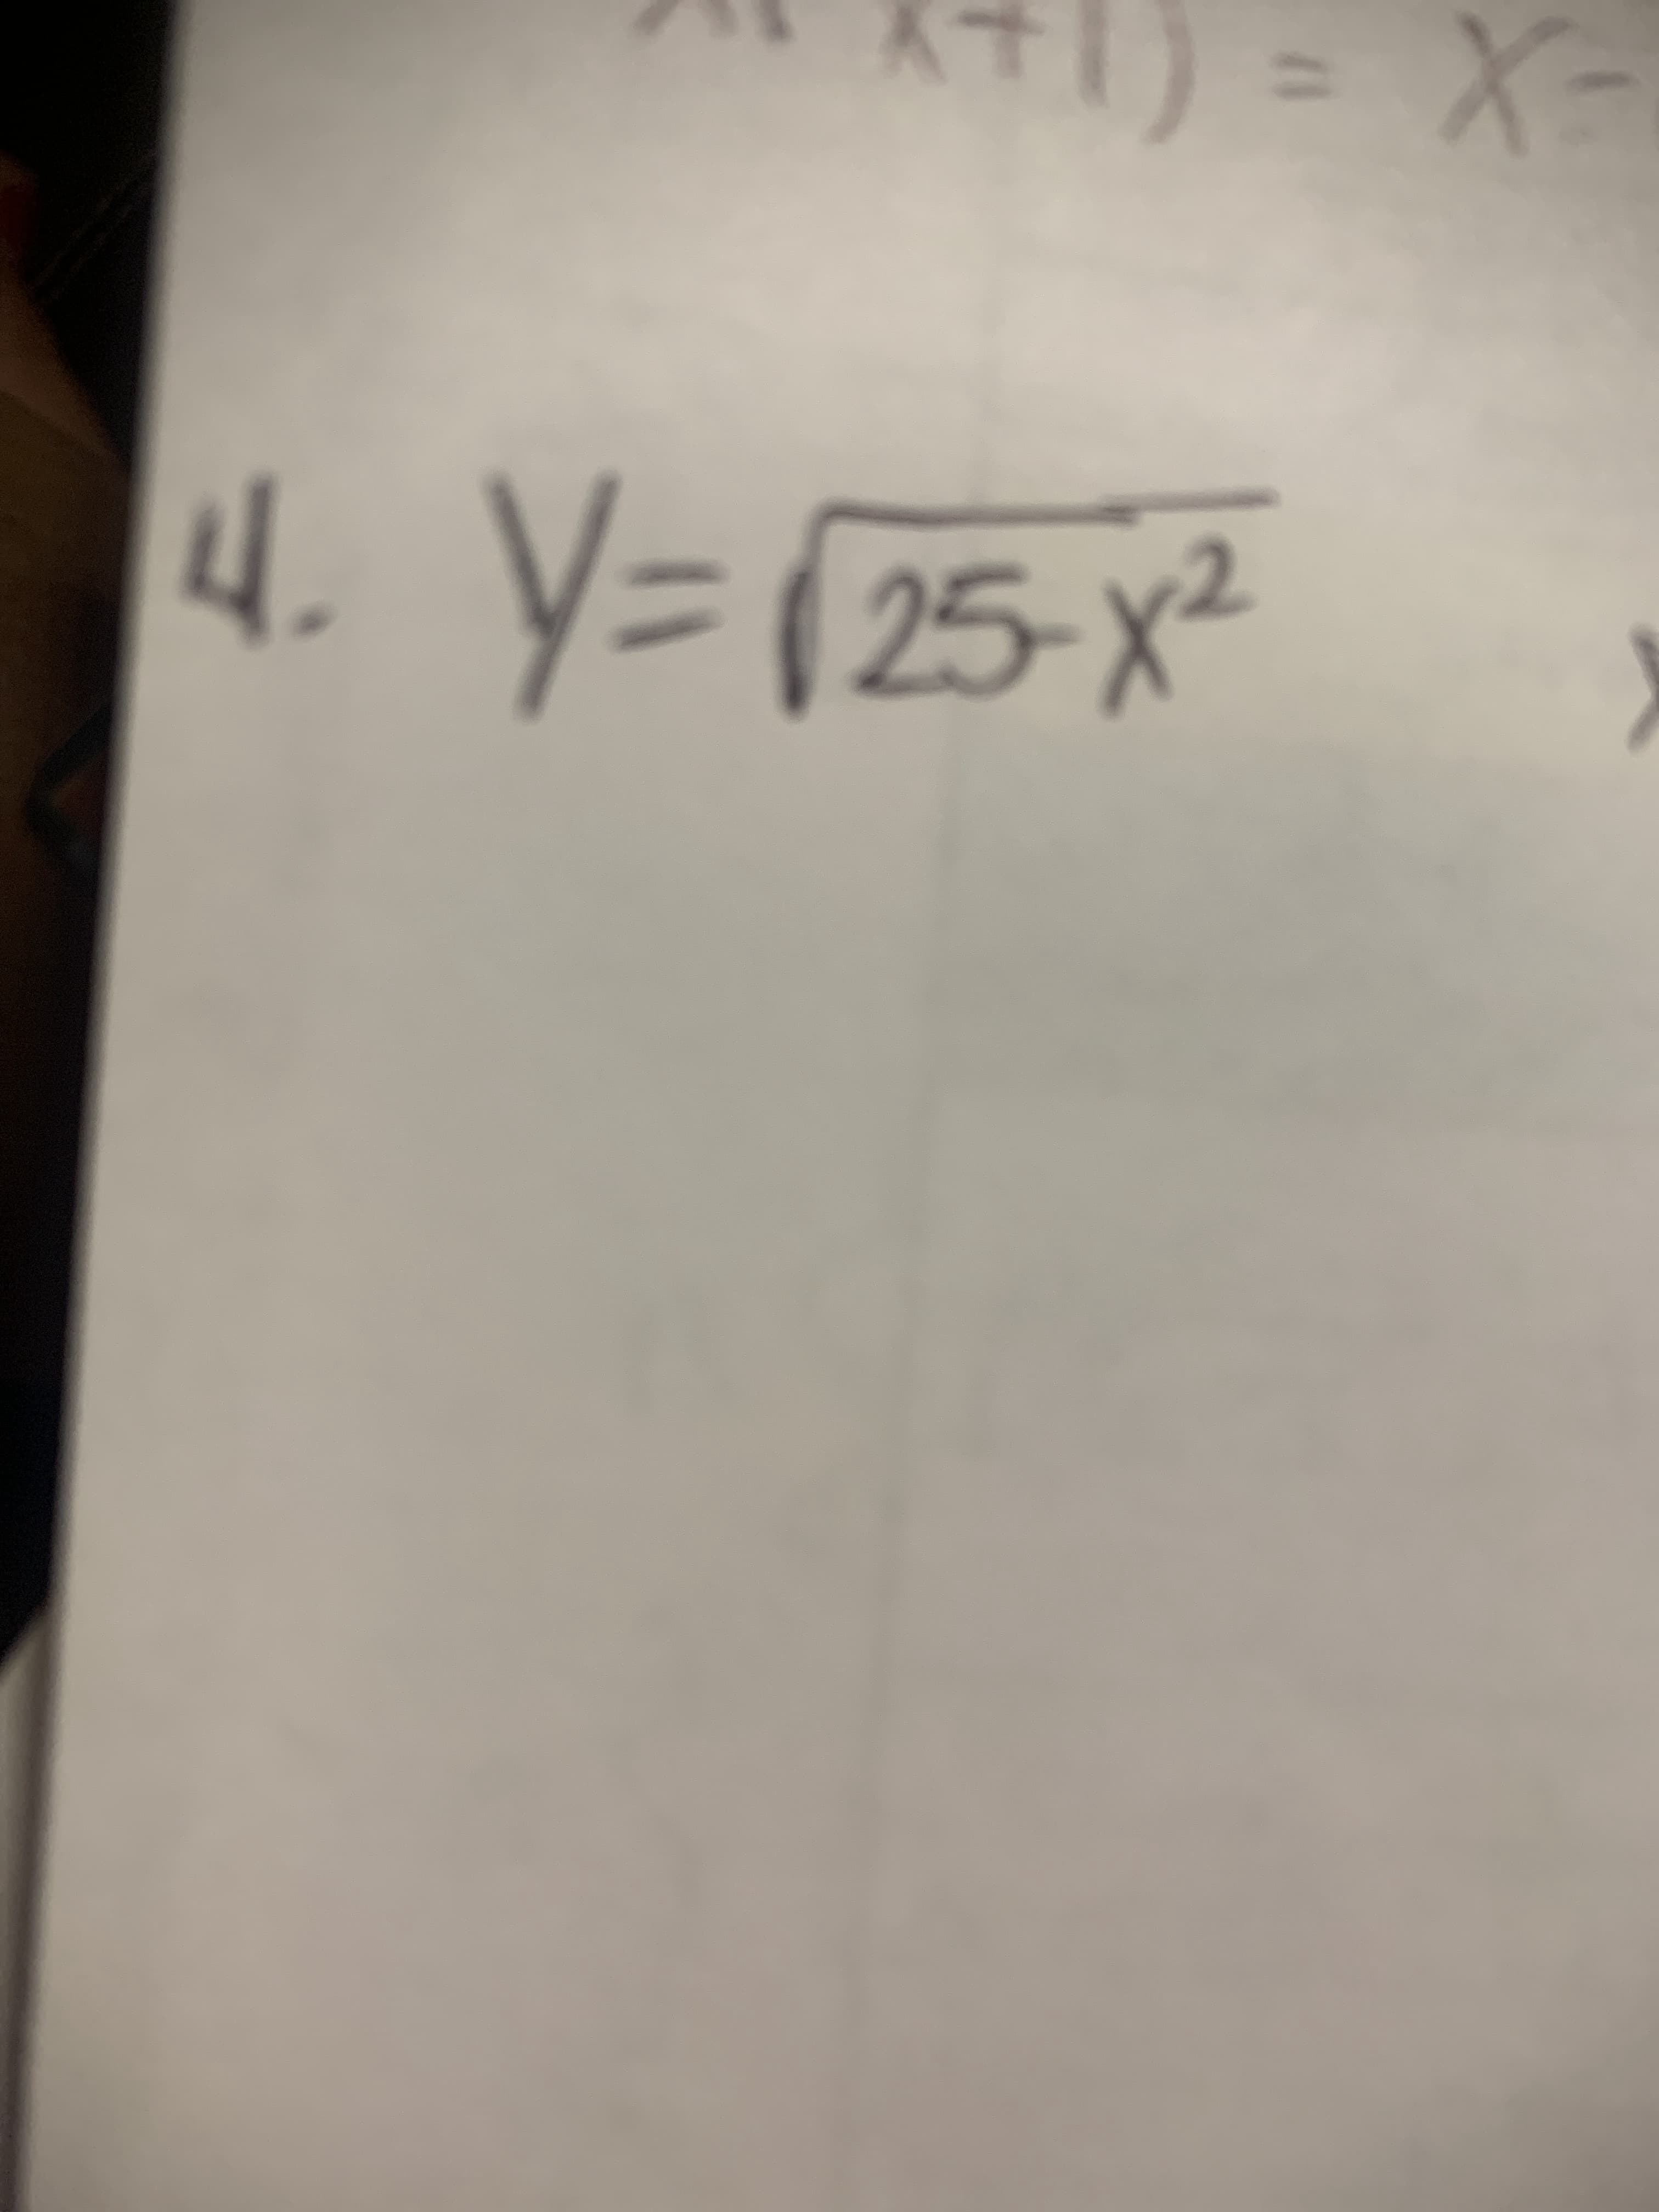 Y= (25-x²
